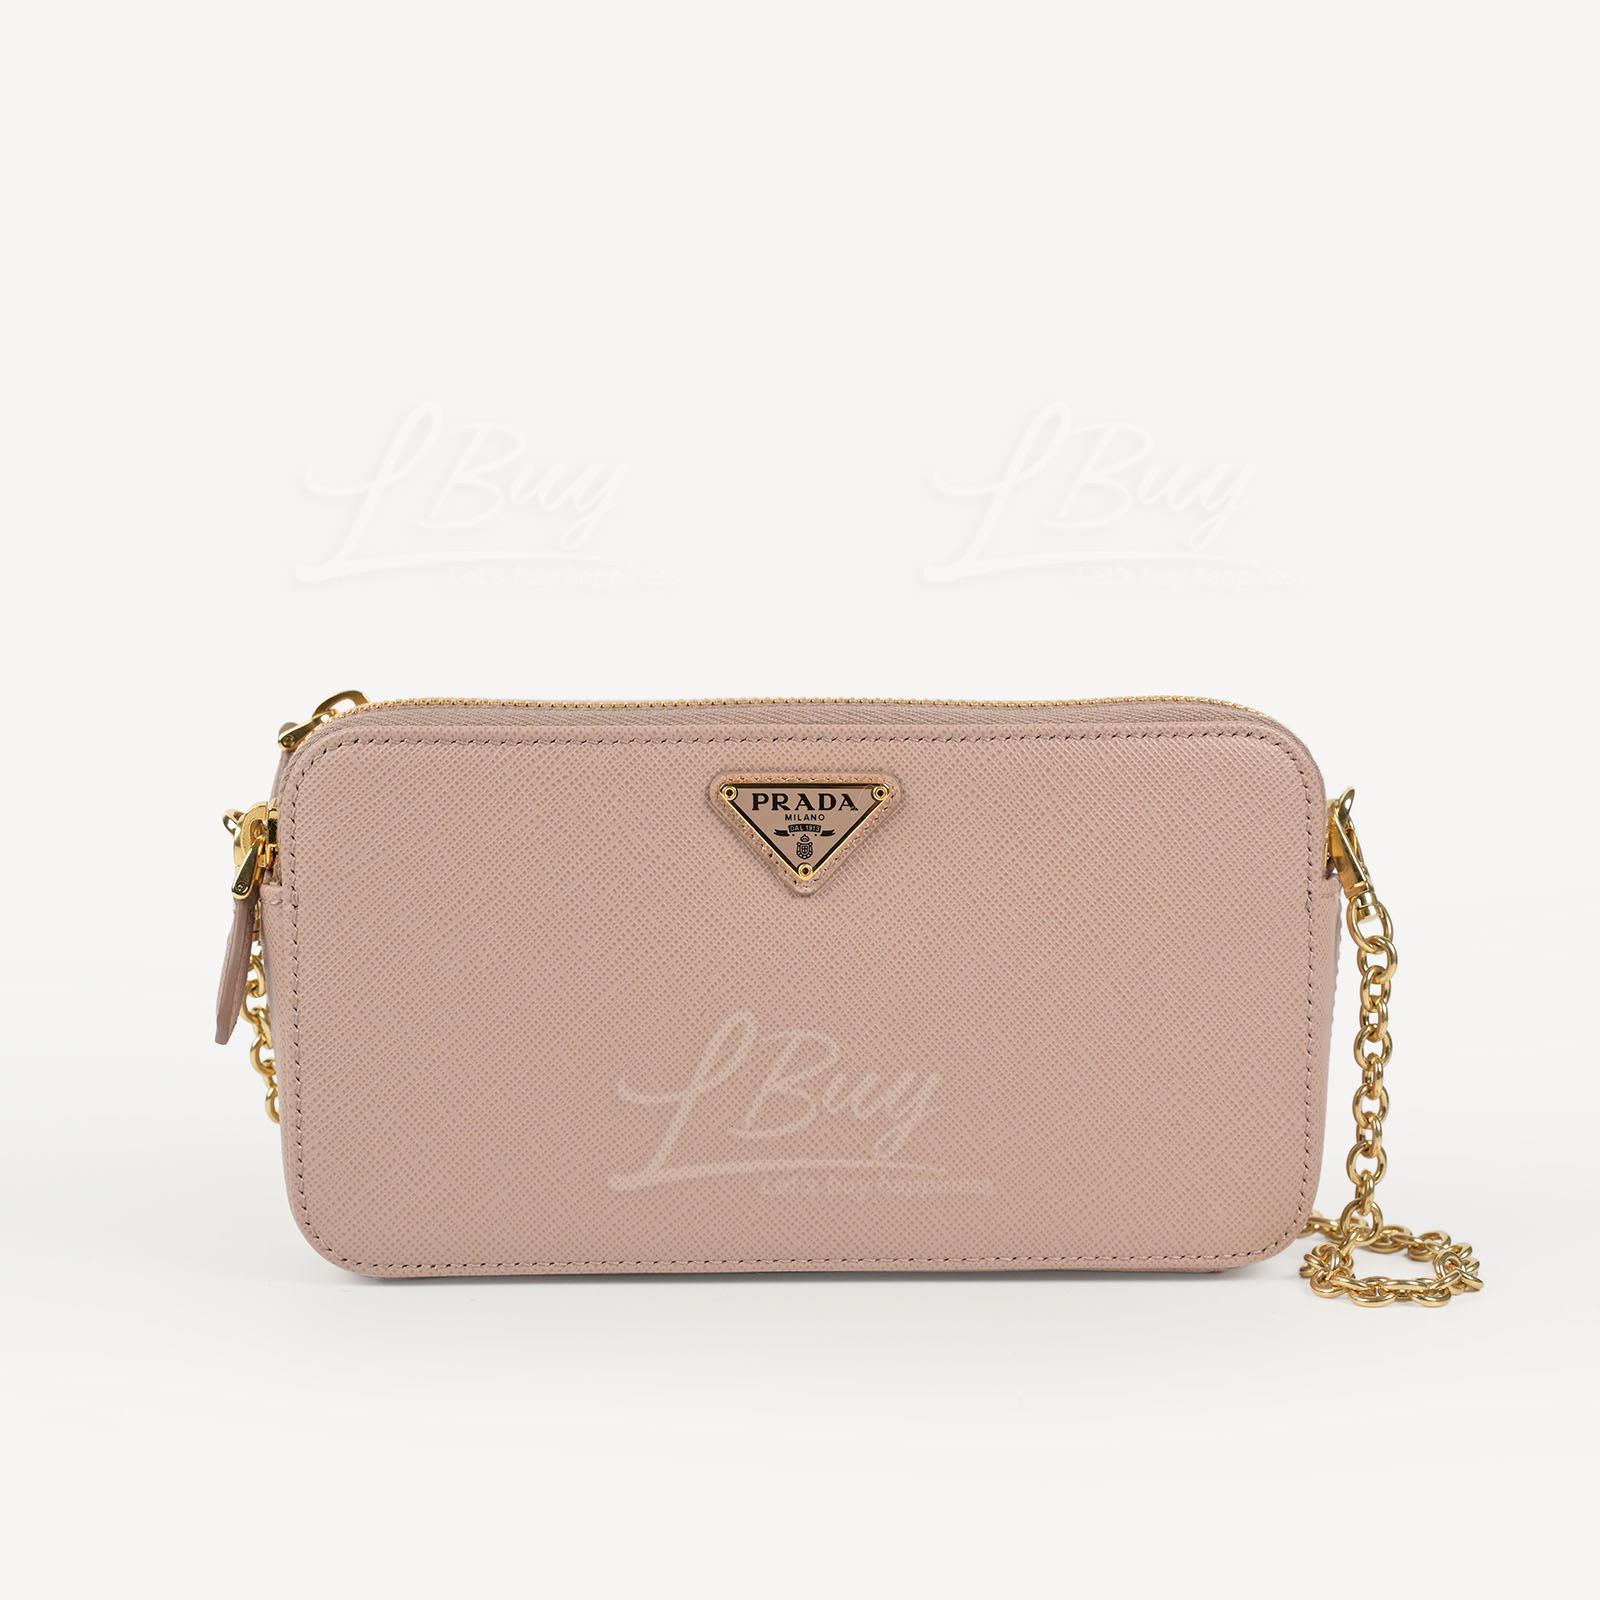 PRADA-Prada Saffiano Leather Double Zipper Pink Shoulder Bag Crossbody Bag